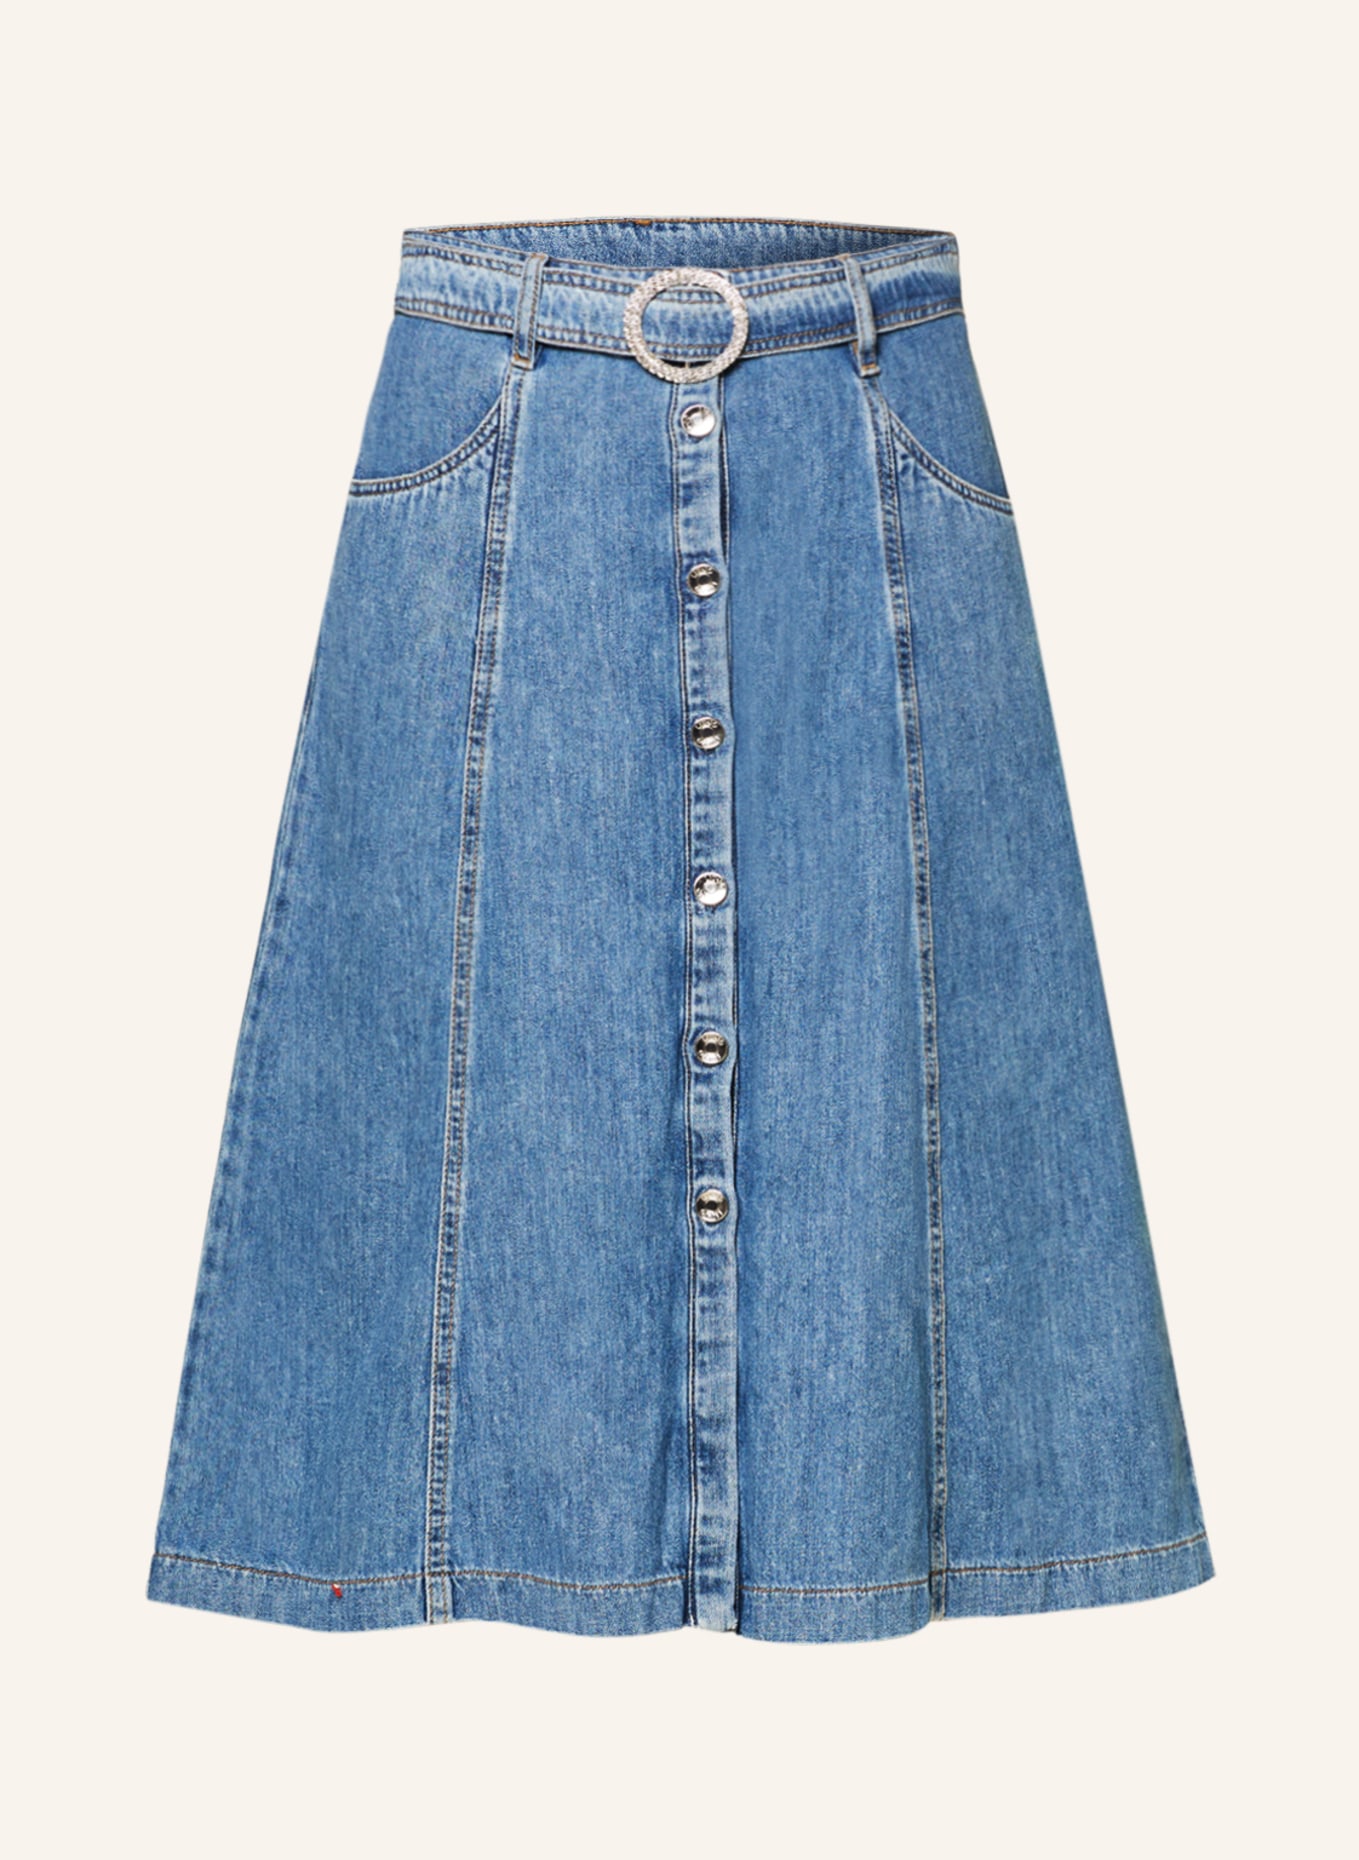 LIU JO Denim skirt with decorative gems, Color: 78690 Den.Blue stbl wonder (Image 1)